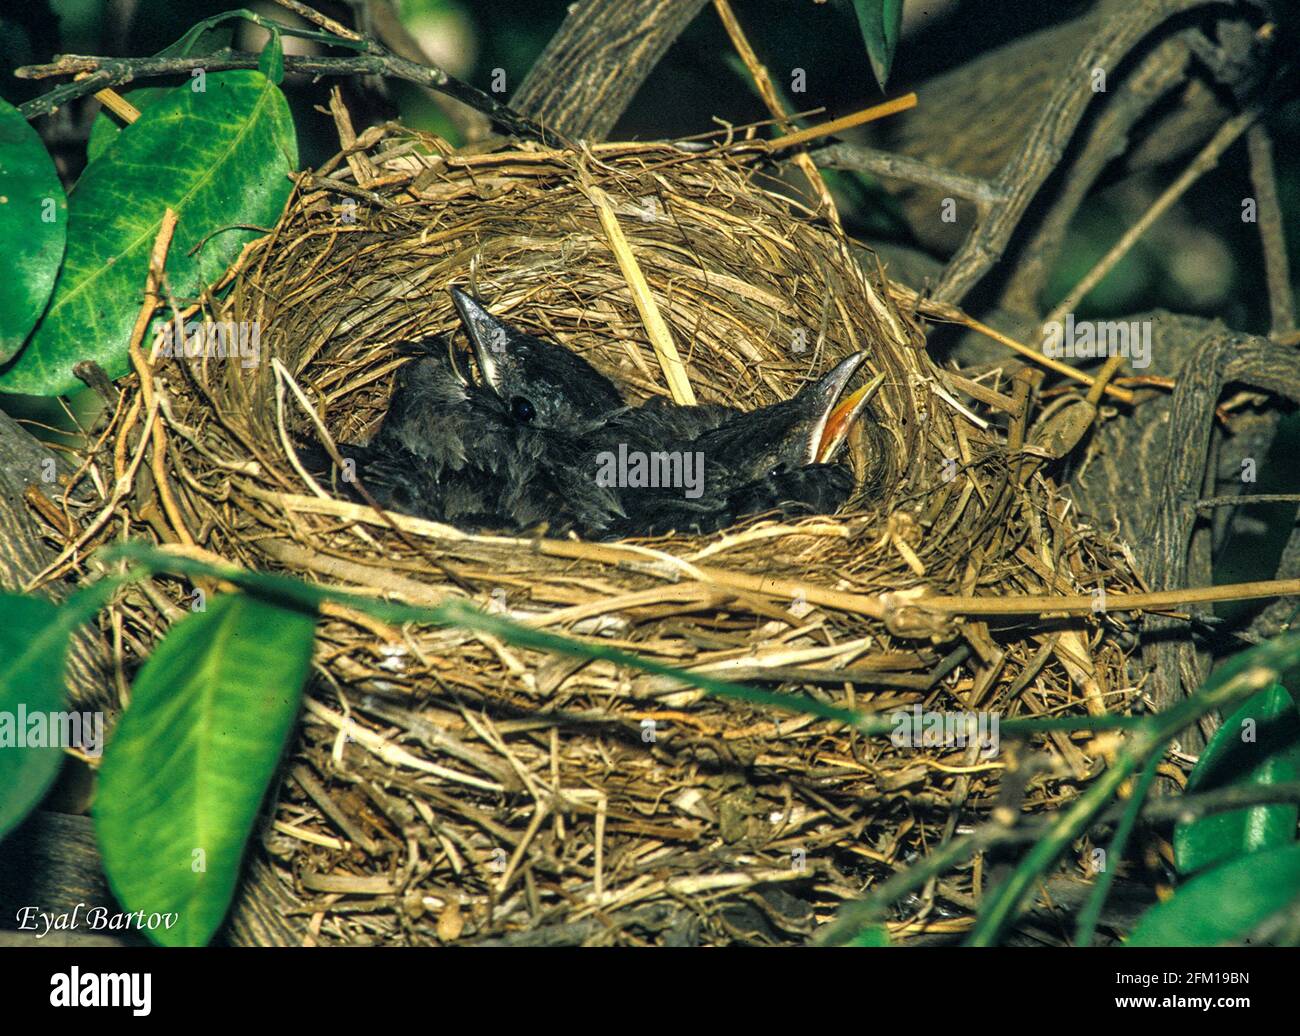 Gewöhnlicher Amsel oder eurasischer Amsel (Turdus merula), der in einem Nest auftauchend ist. Dieser Vogel kommt in ganz Europa und im Nahen Osten vor und ernährt sich von einem Vari Stockfoto